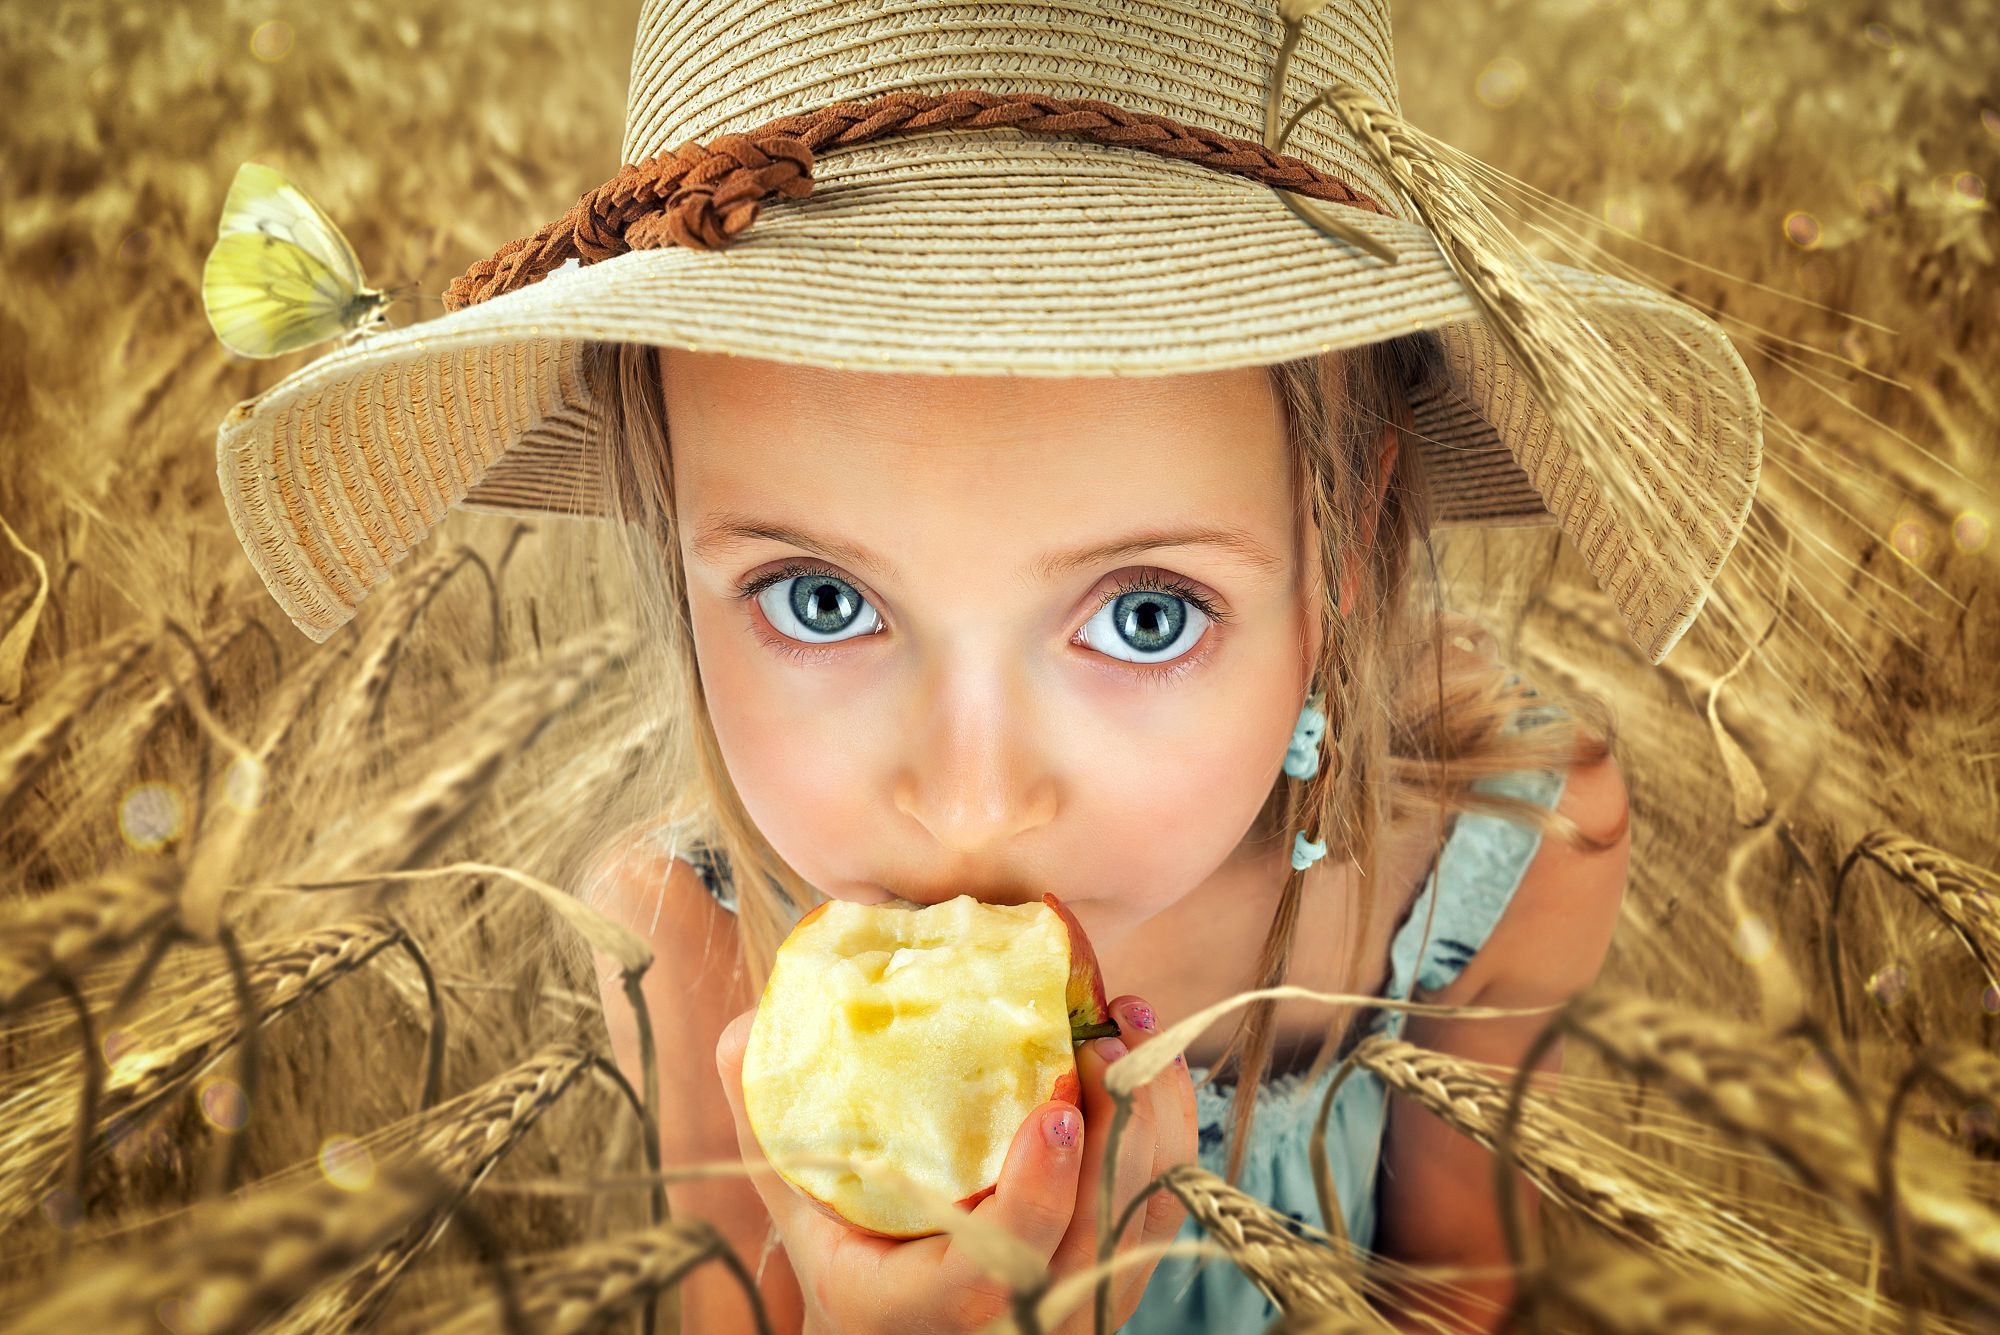 Фото Девочка в соломенной шляпке, стоя среди колосьев пшеницы, смотрит на нас большими глазами и ест яблоко, фотограф John Wilhelm